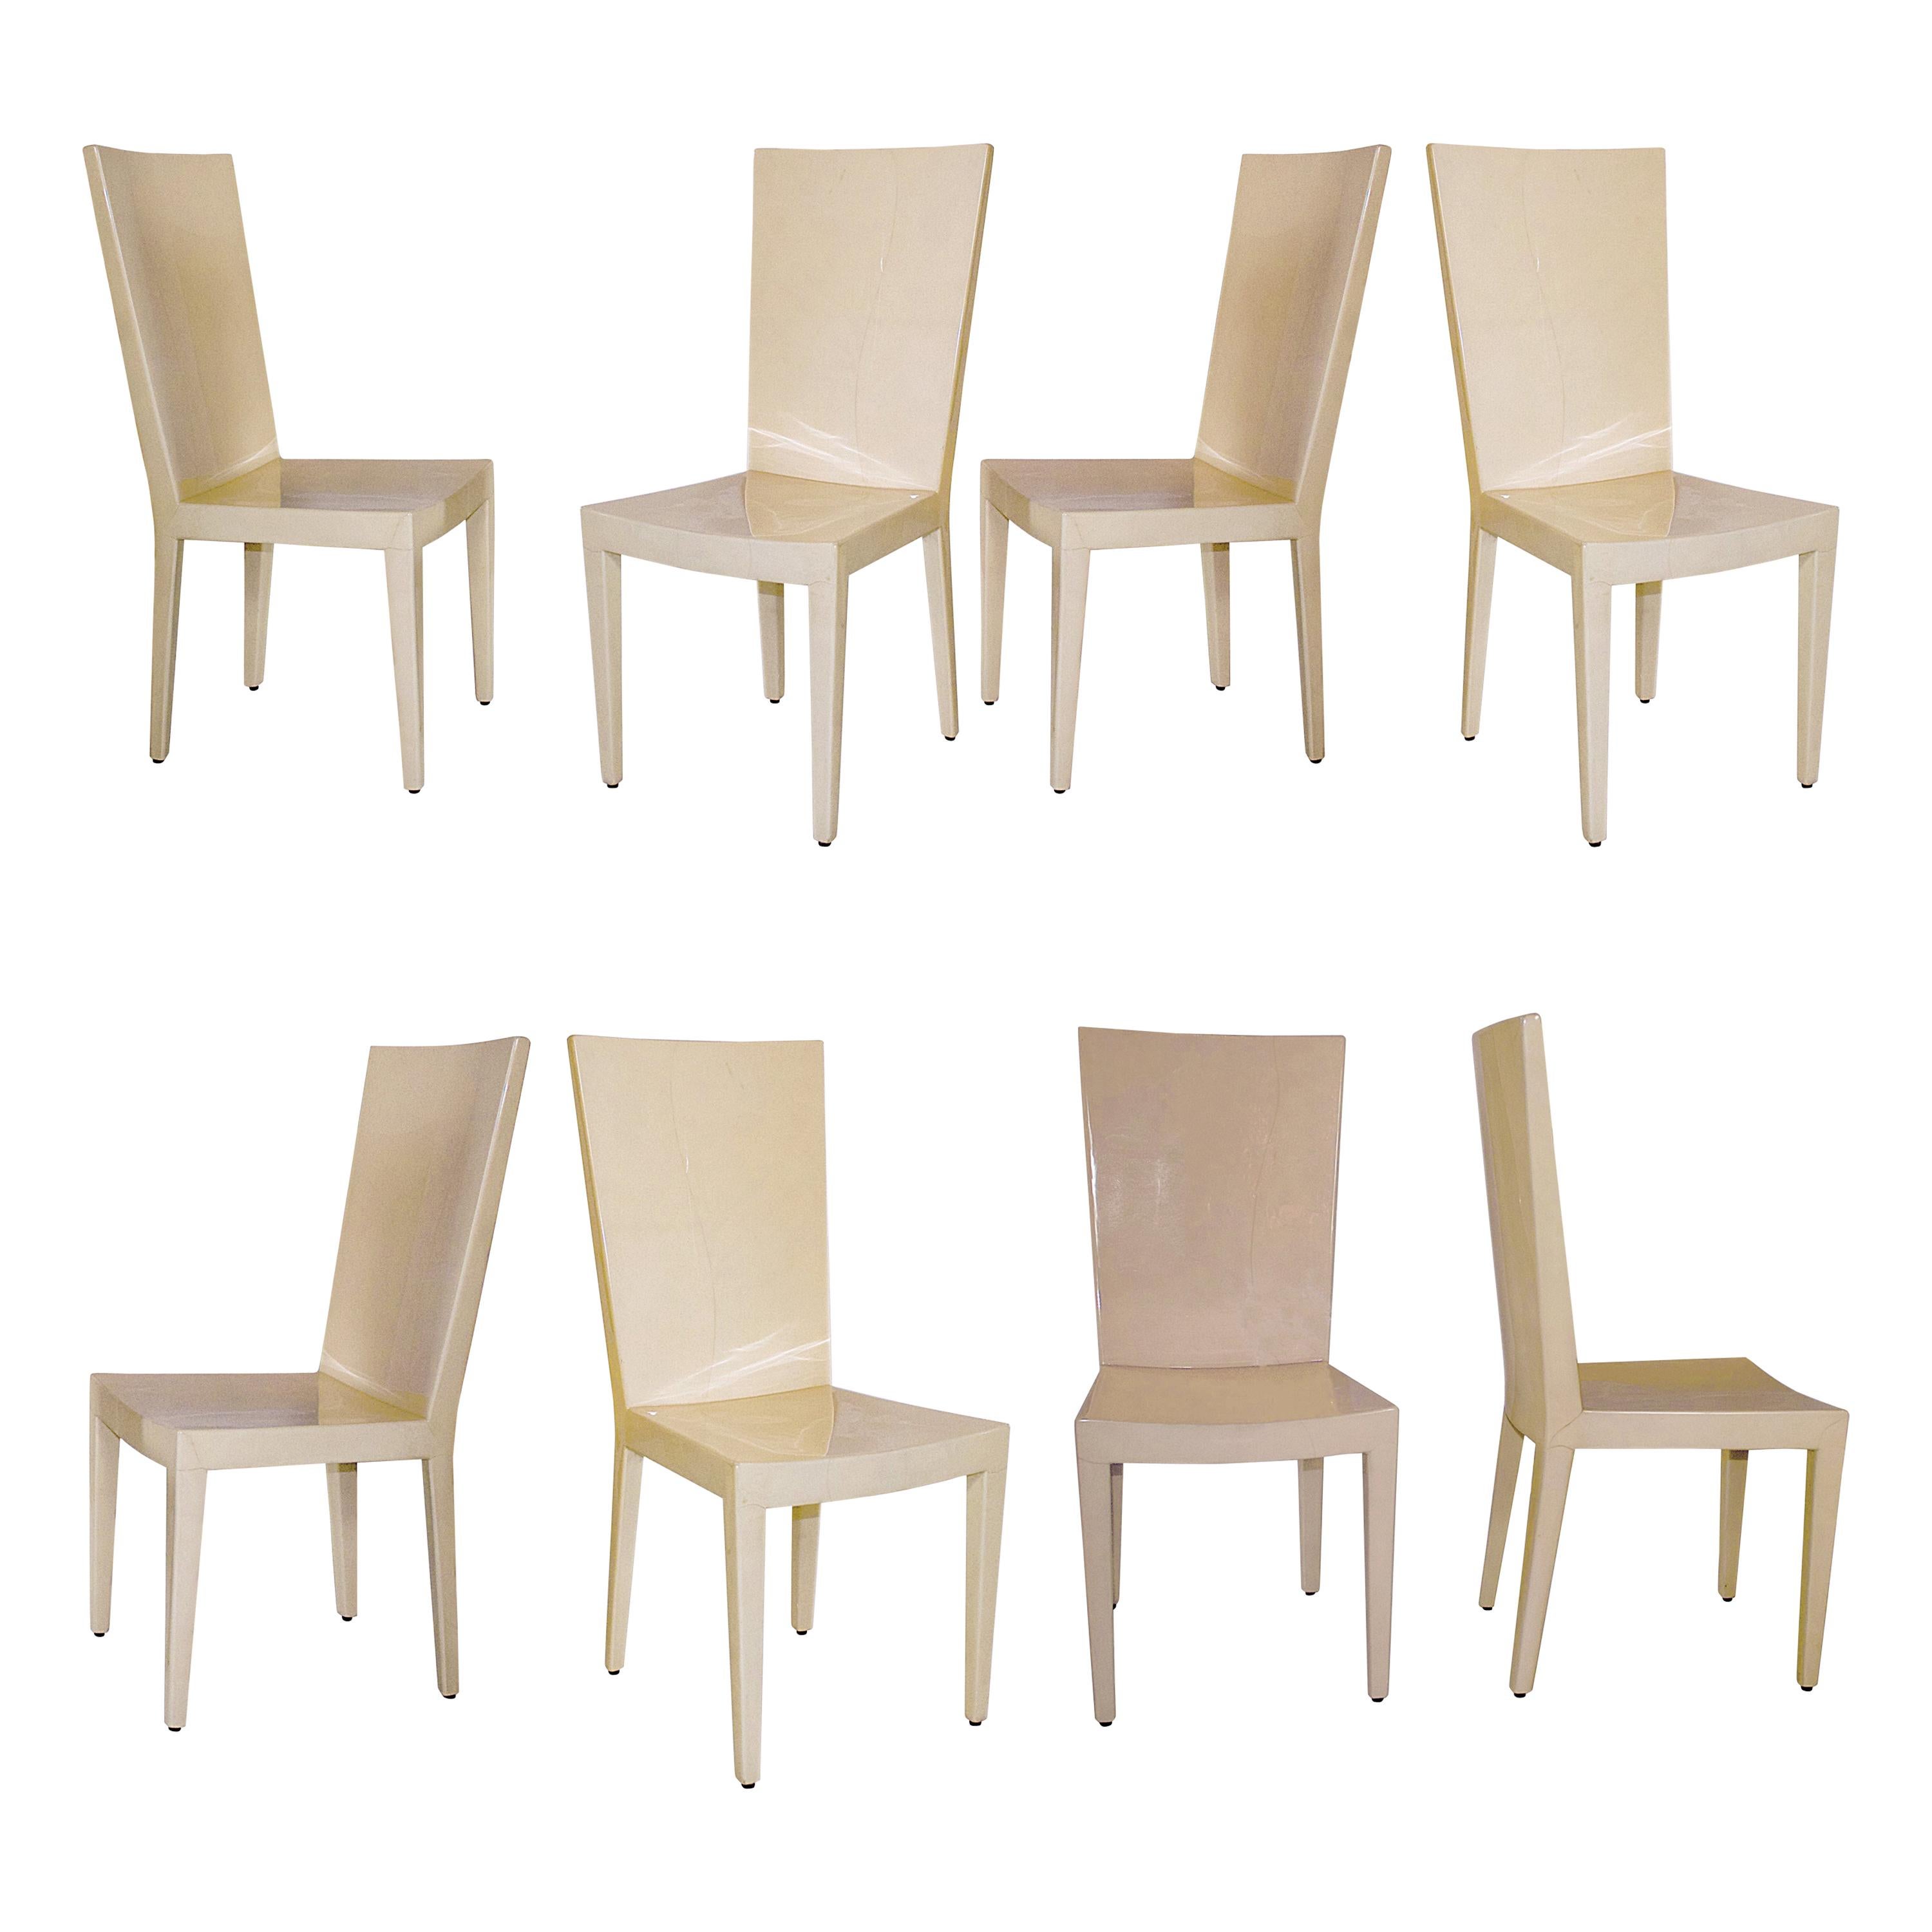 Set of 8 Goatskin "JMF" Dining Chairs, Karl Springer